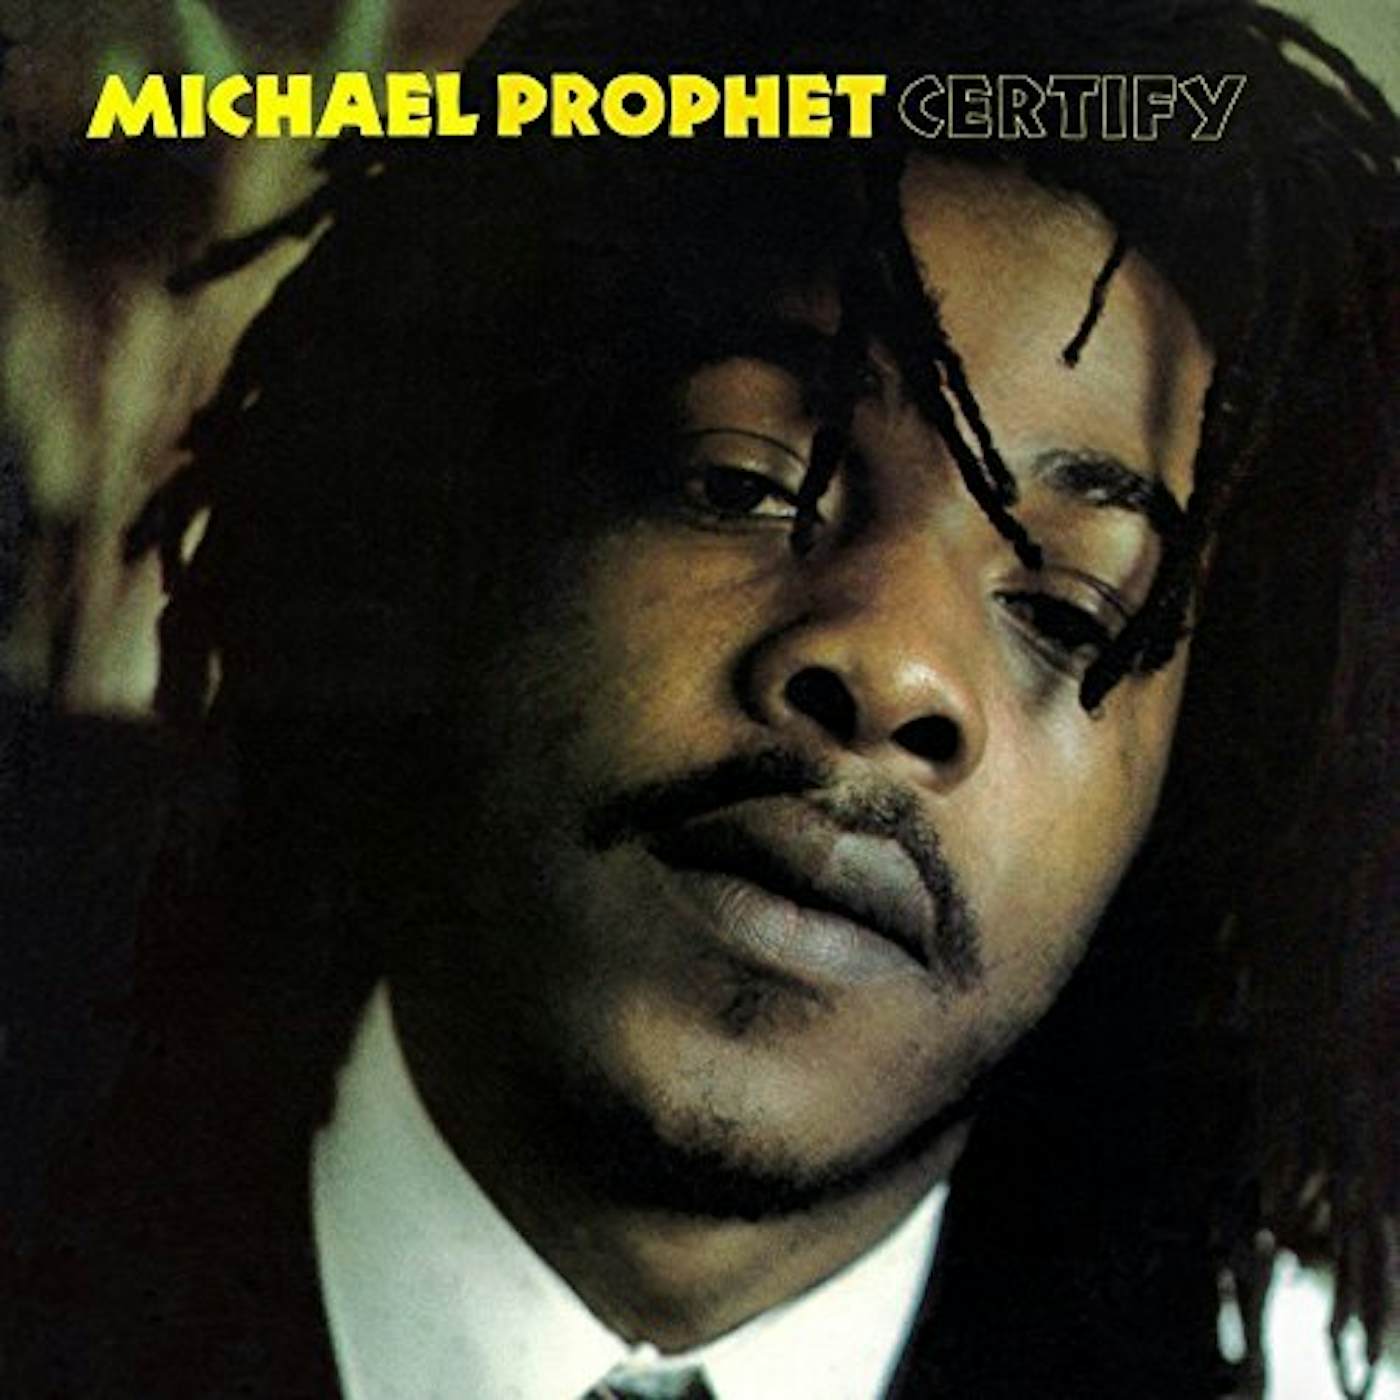 Michael Prophet CERTIFY CD